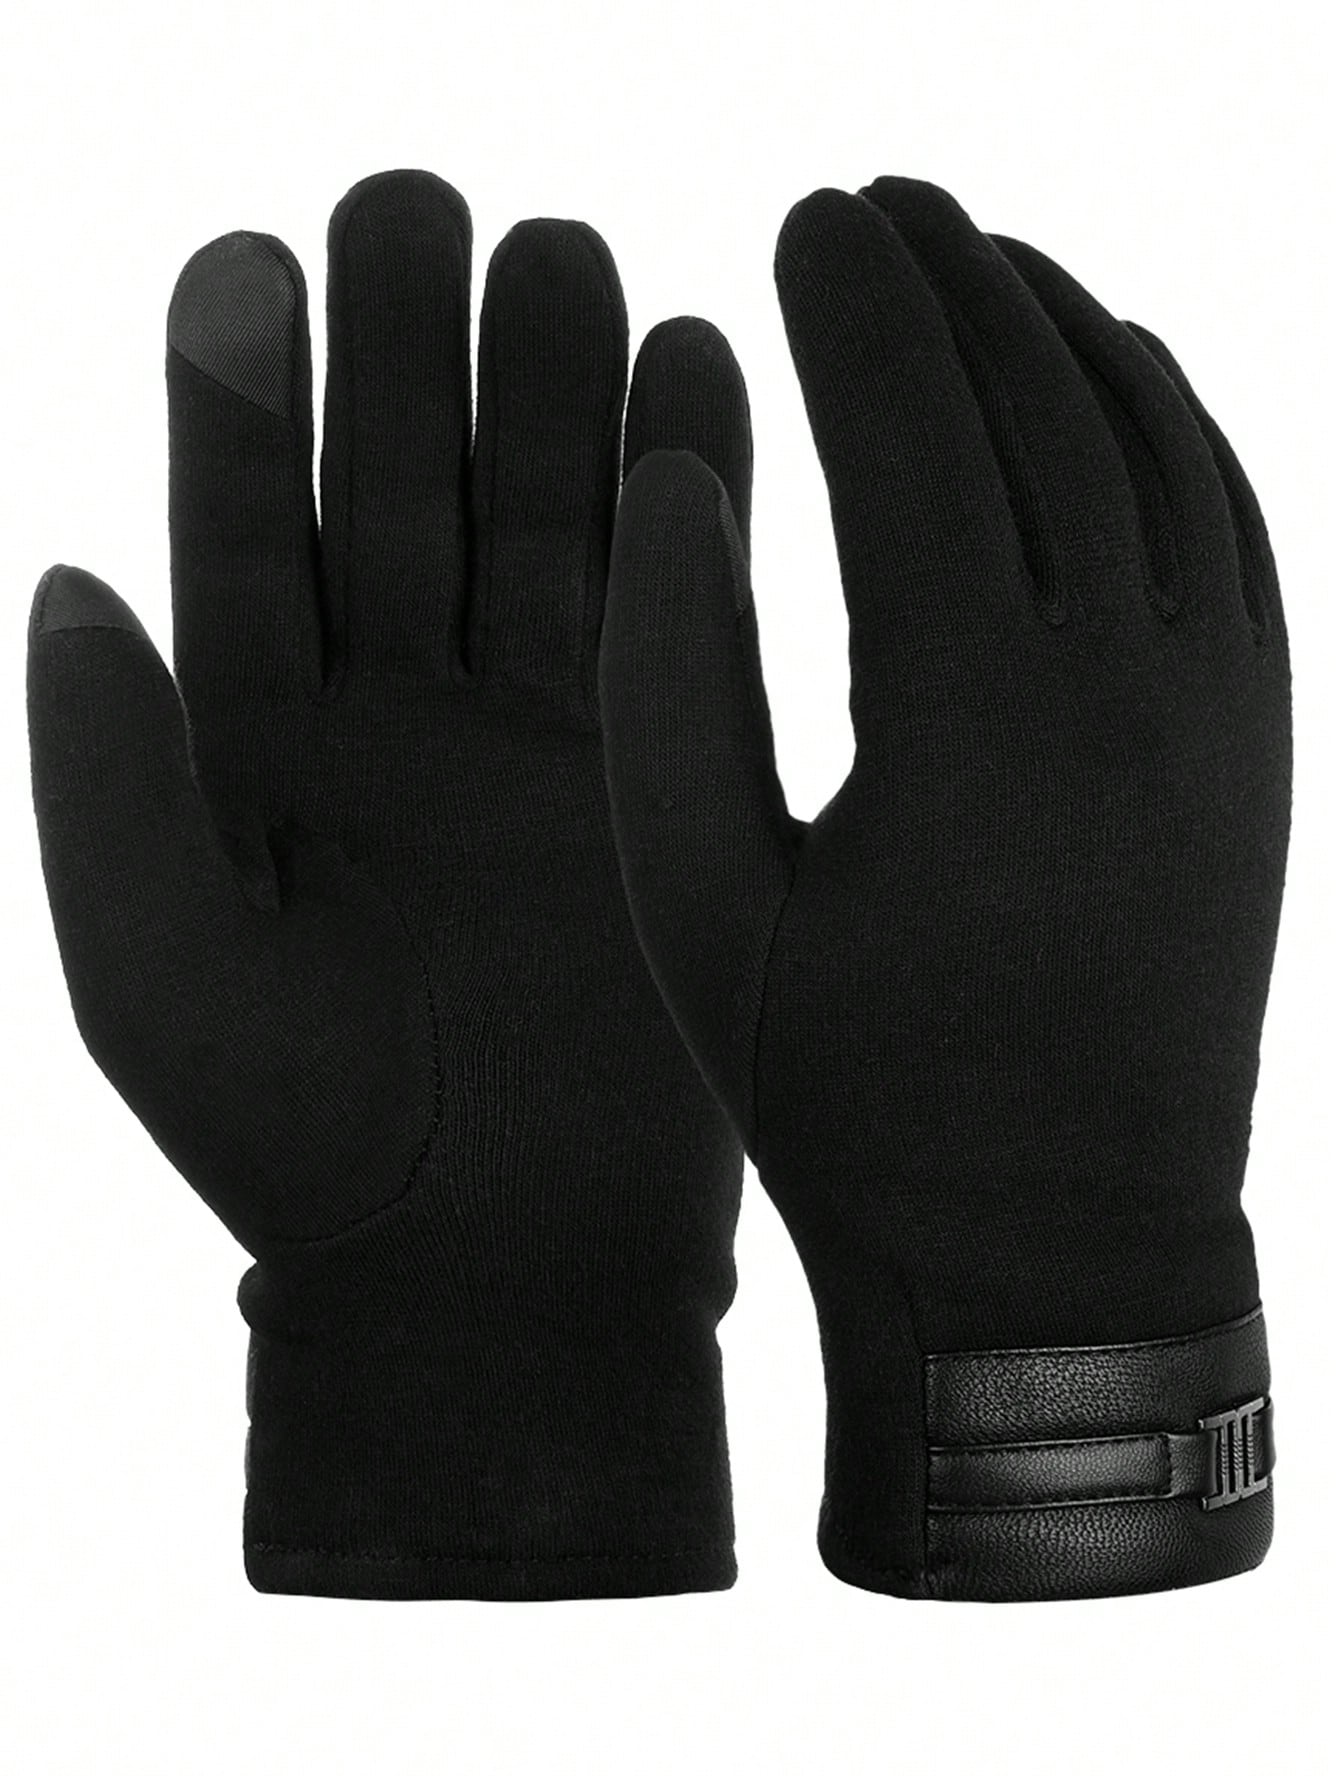 перчатки мужские зимние теплые трикотажные демисезонные ATARNI Зимние теплые перчатки Перчатки для сенсорного экрана Повседневные перчатки для мужчин, черный